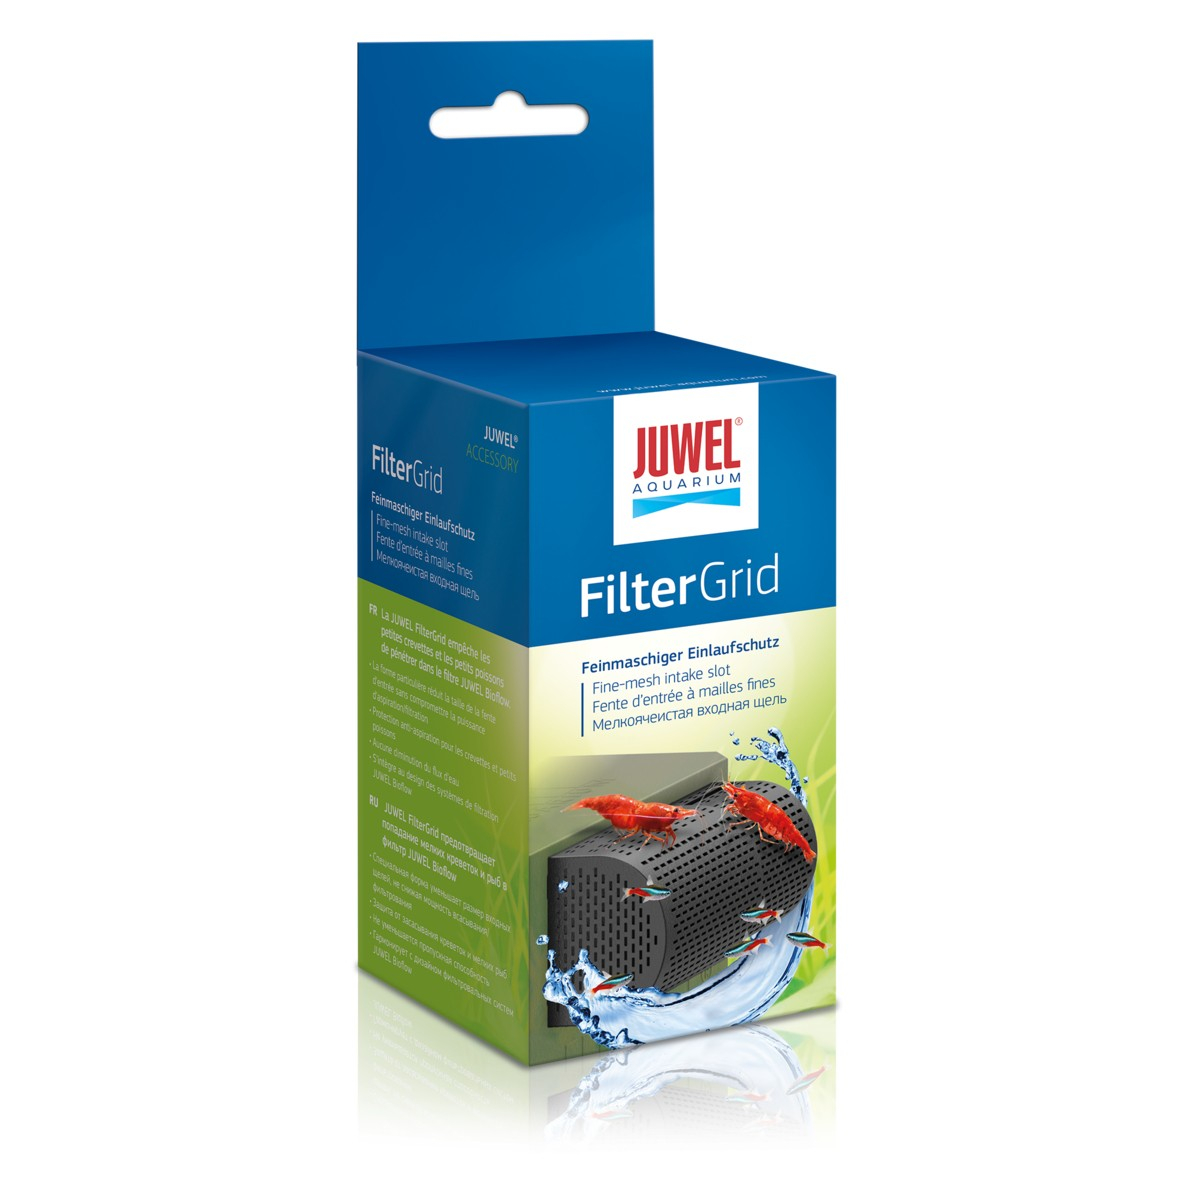 FilterGrid protezione degli invertebrati Juwel